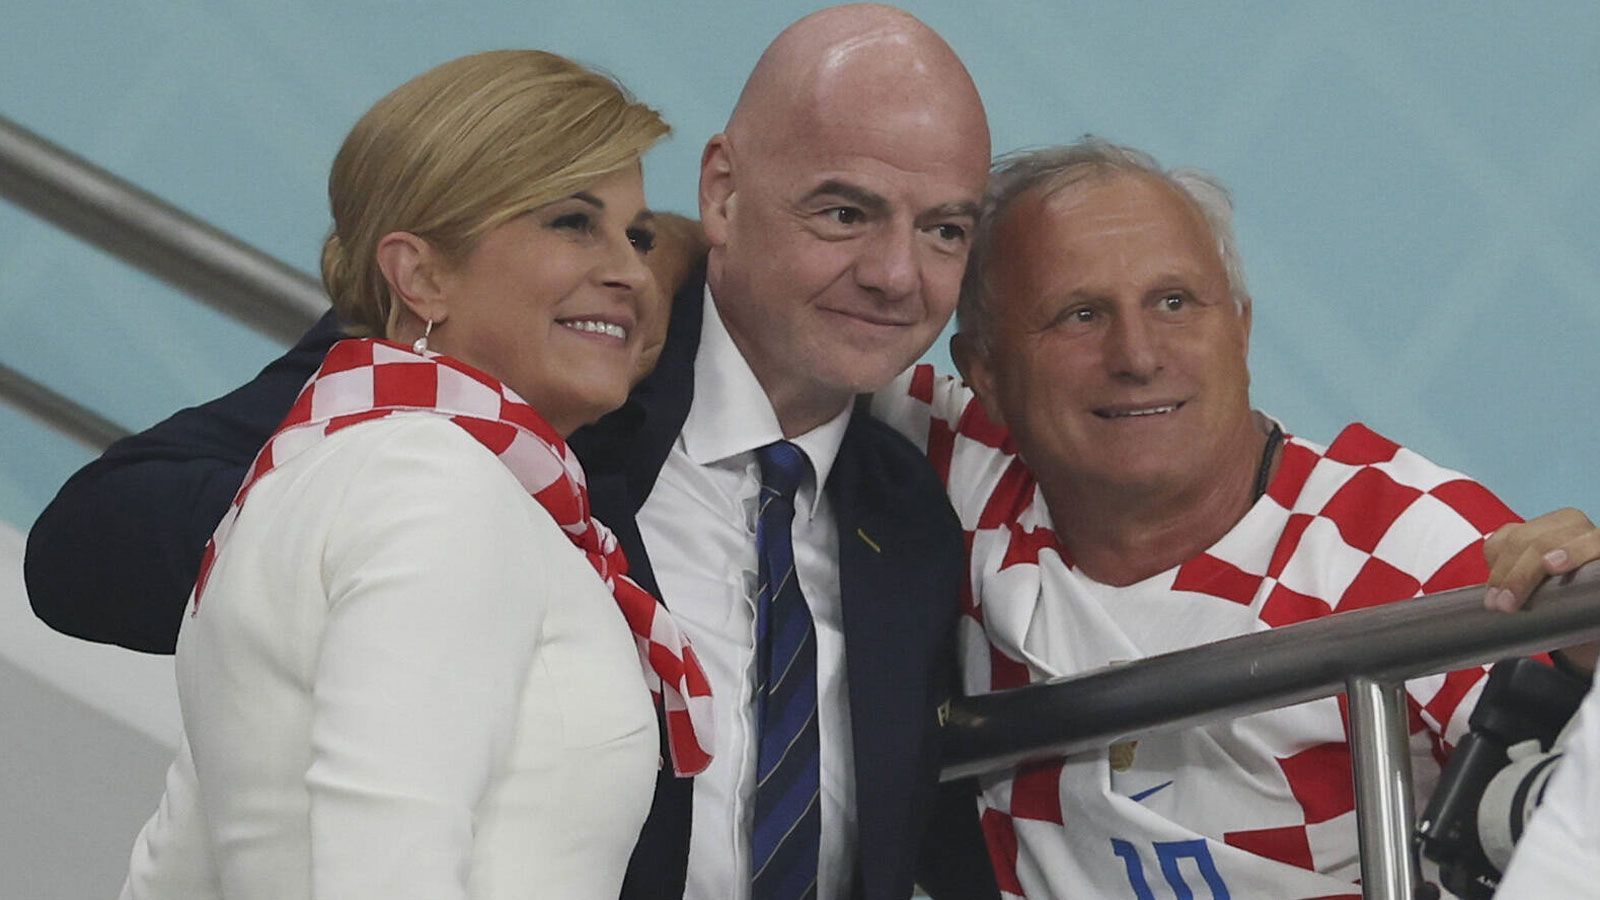 
                <strong>Infantino zeigt Flagge</strong><br>
                Auch FIFA-Boss Gianni Infantino (M.) lässt sich die Partie natürlich nicht entgehen. Dabei geht er auf Tuchfühlung mit der früheren kroatischen Präsidentin Kolinda Grabar-Kitarovic. Für wen in dem Moment auf dem Rasen wohl sein Herz schlägt?
              